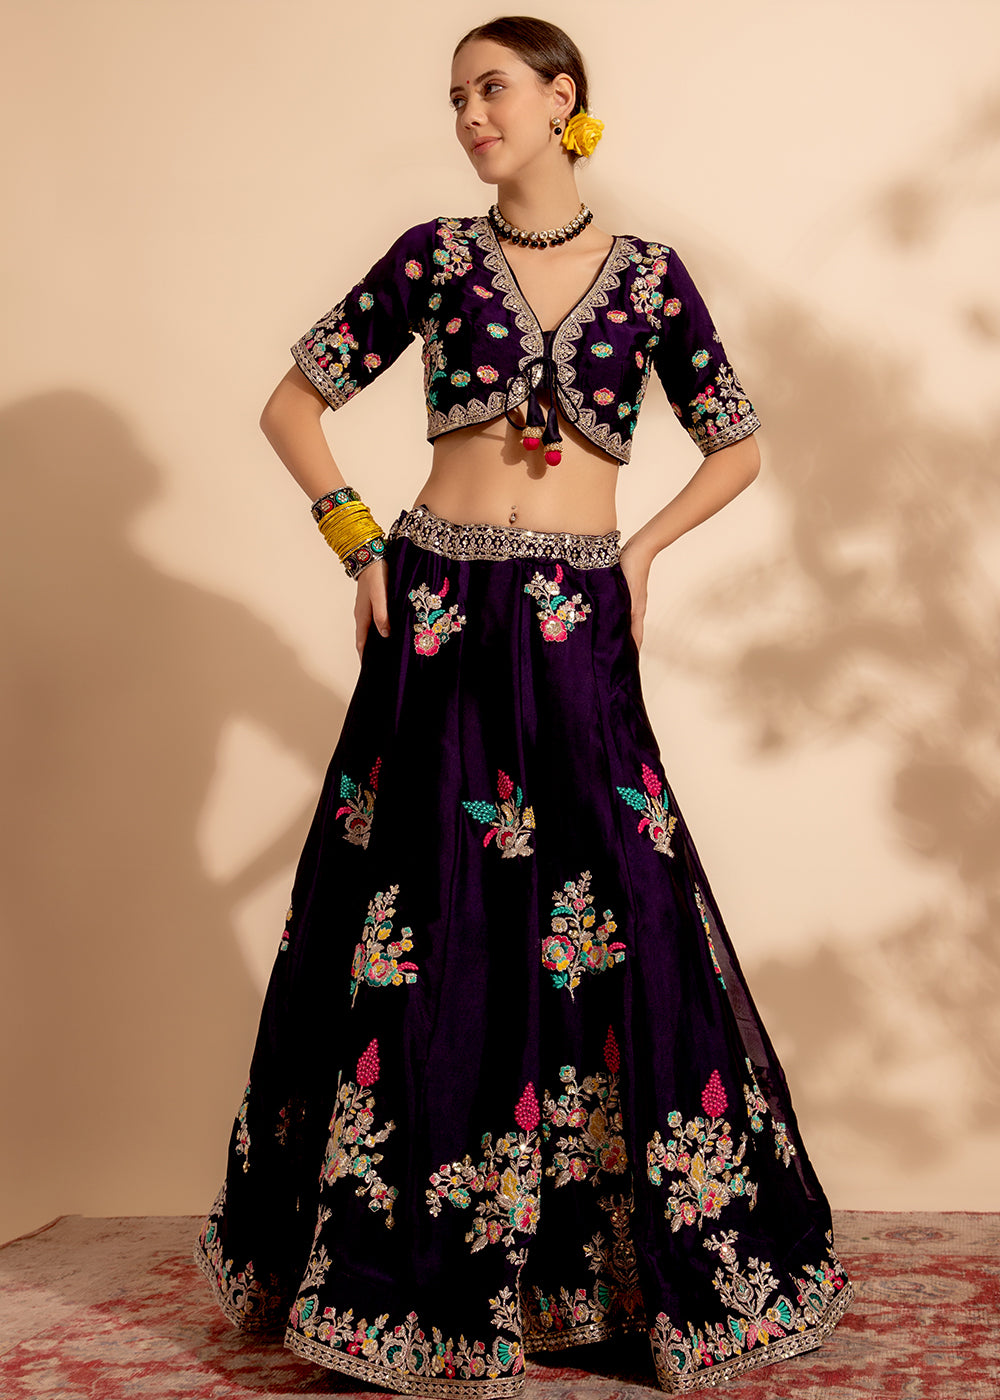 Buy Now Gorgeous Purple Bridesmaid Style Wedding Lehenga Choli Online in USA, UK, Canada & Worldwide at Empress Clothing.